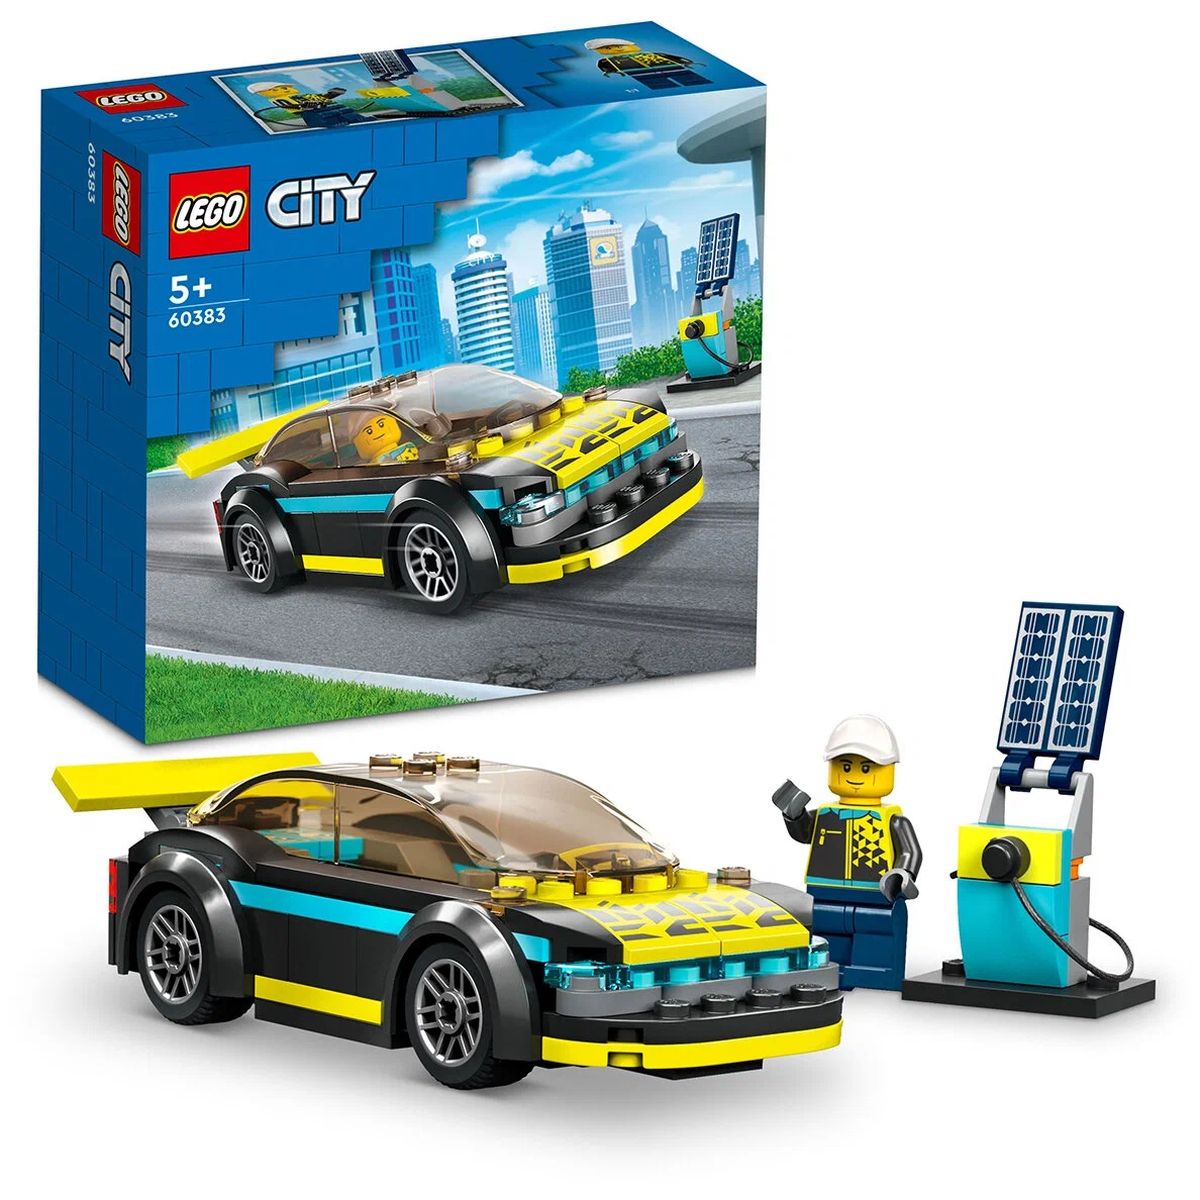 Конструктор LEGO City Электрический спорткар, 95 деталей, 60383 lego city электрический спорткар 60383